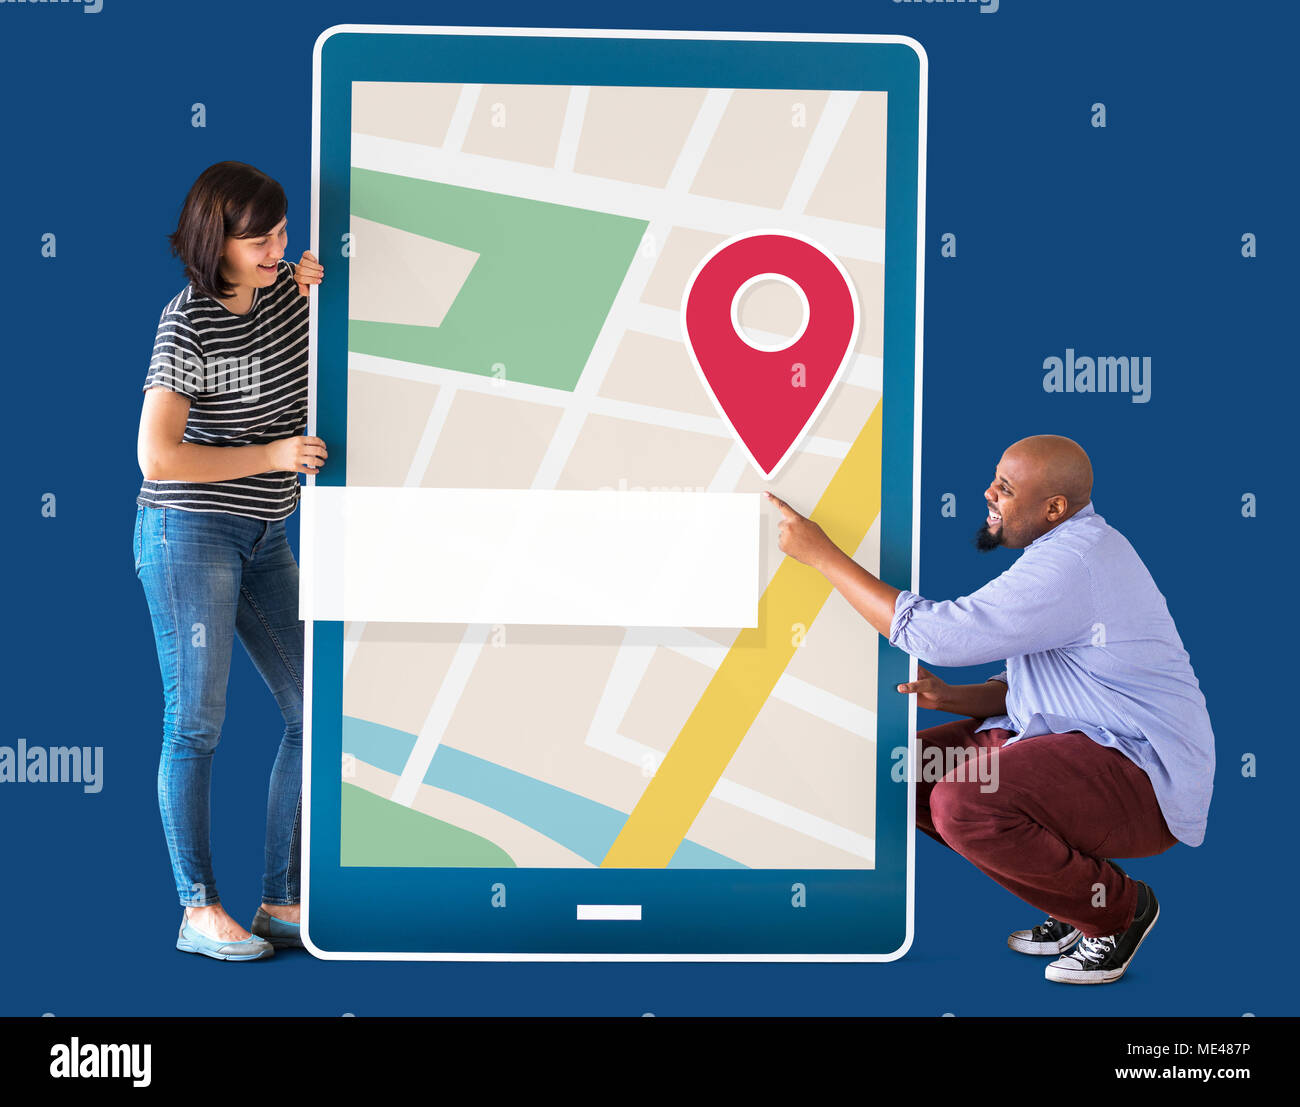 GPS navigation map on digital device Stock Photo